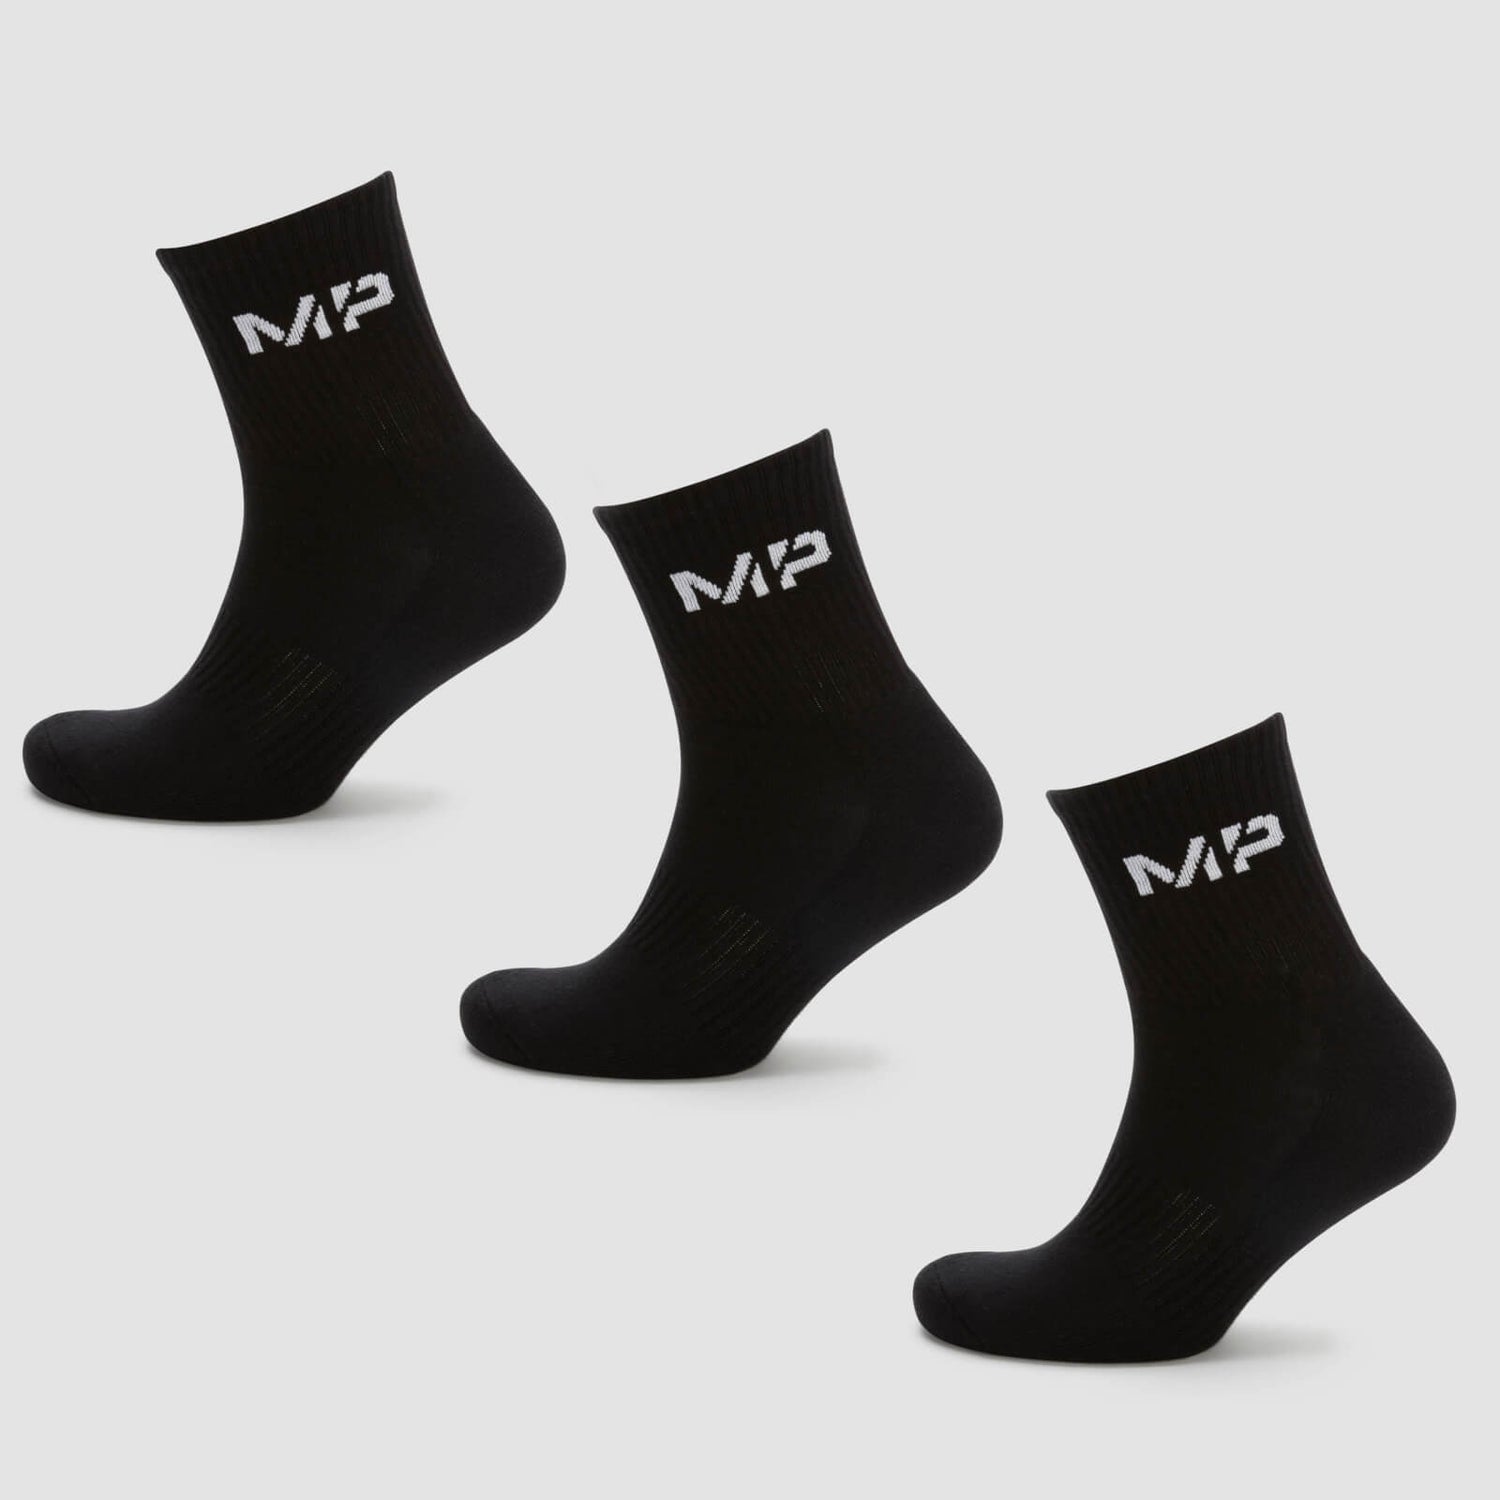 MP Women's Crew Socks (3 Pack) - Black - UK 3-6